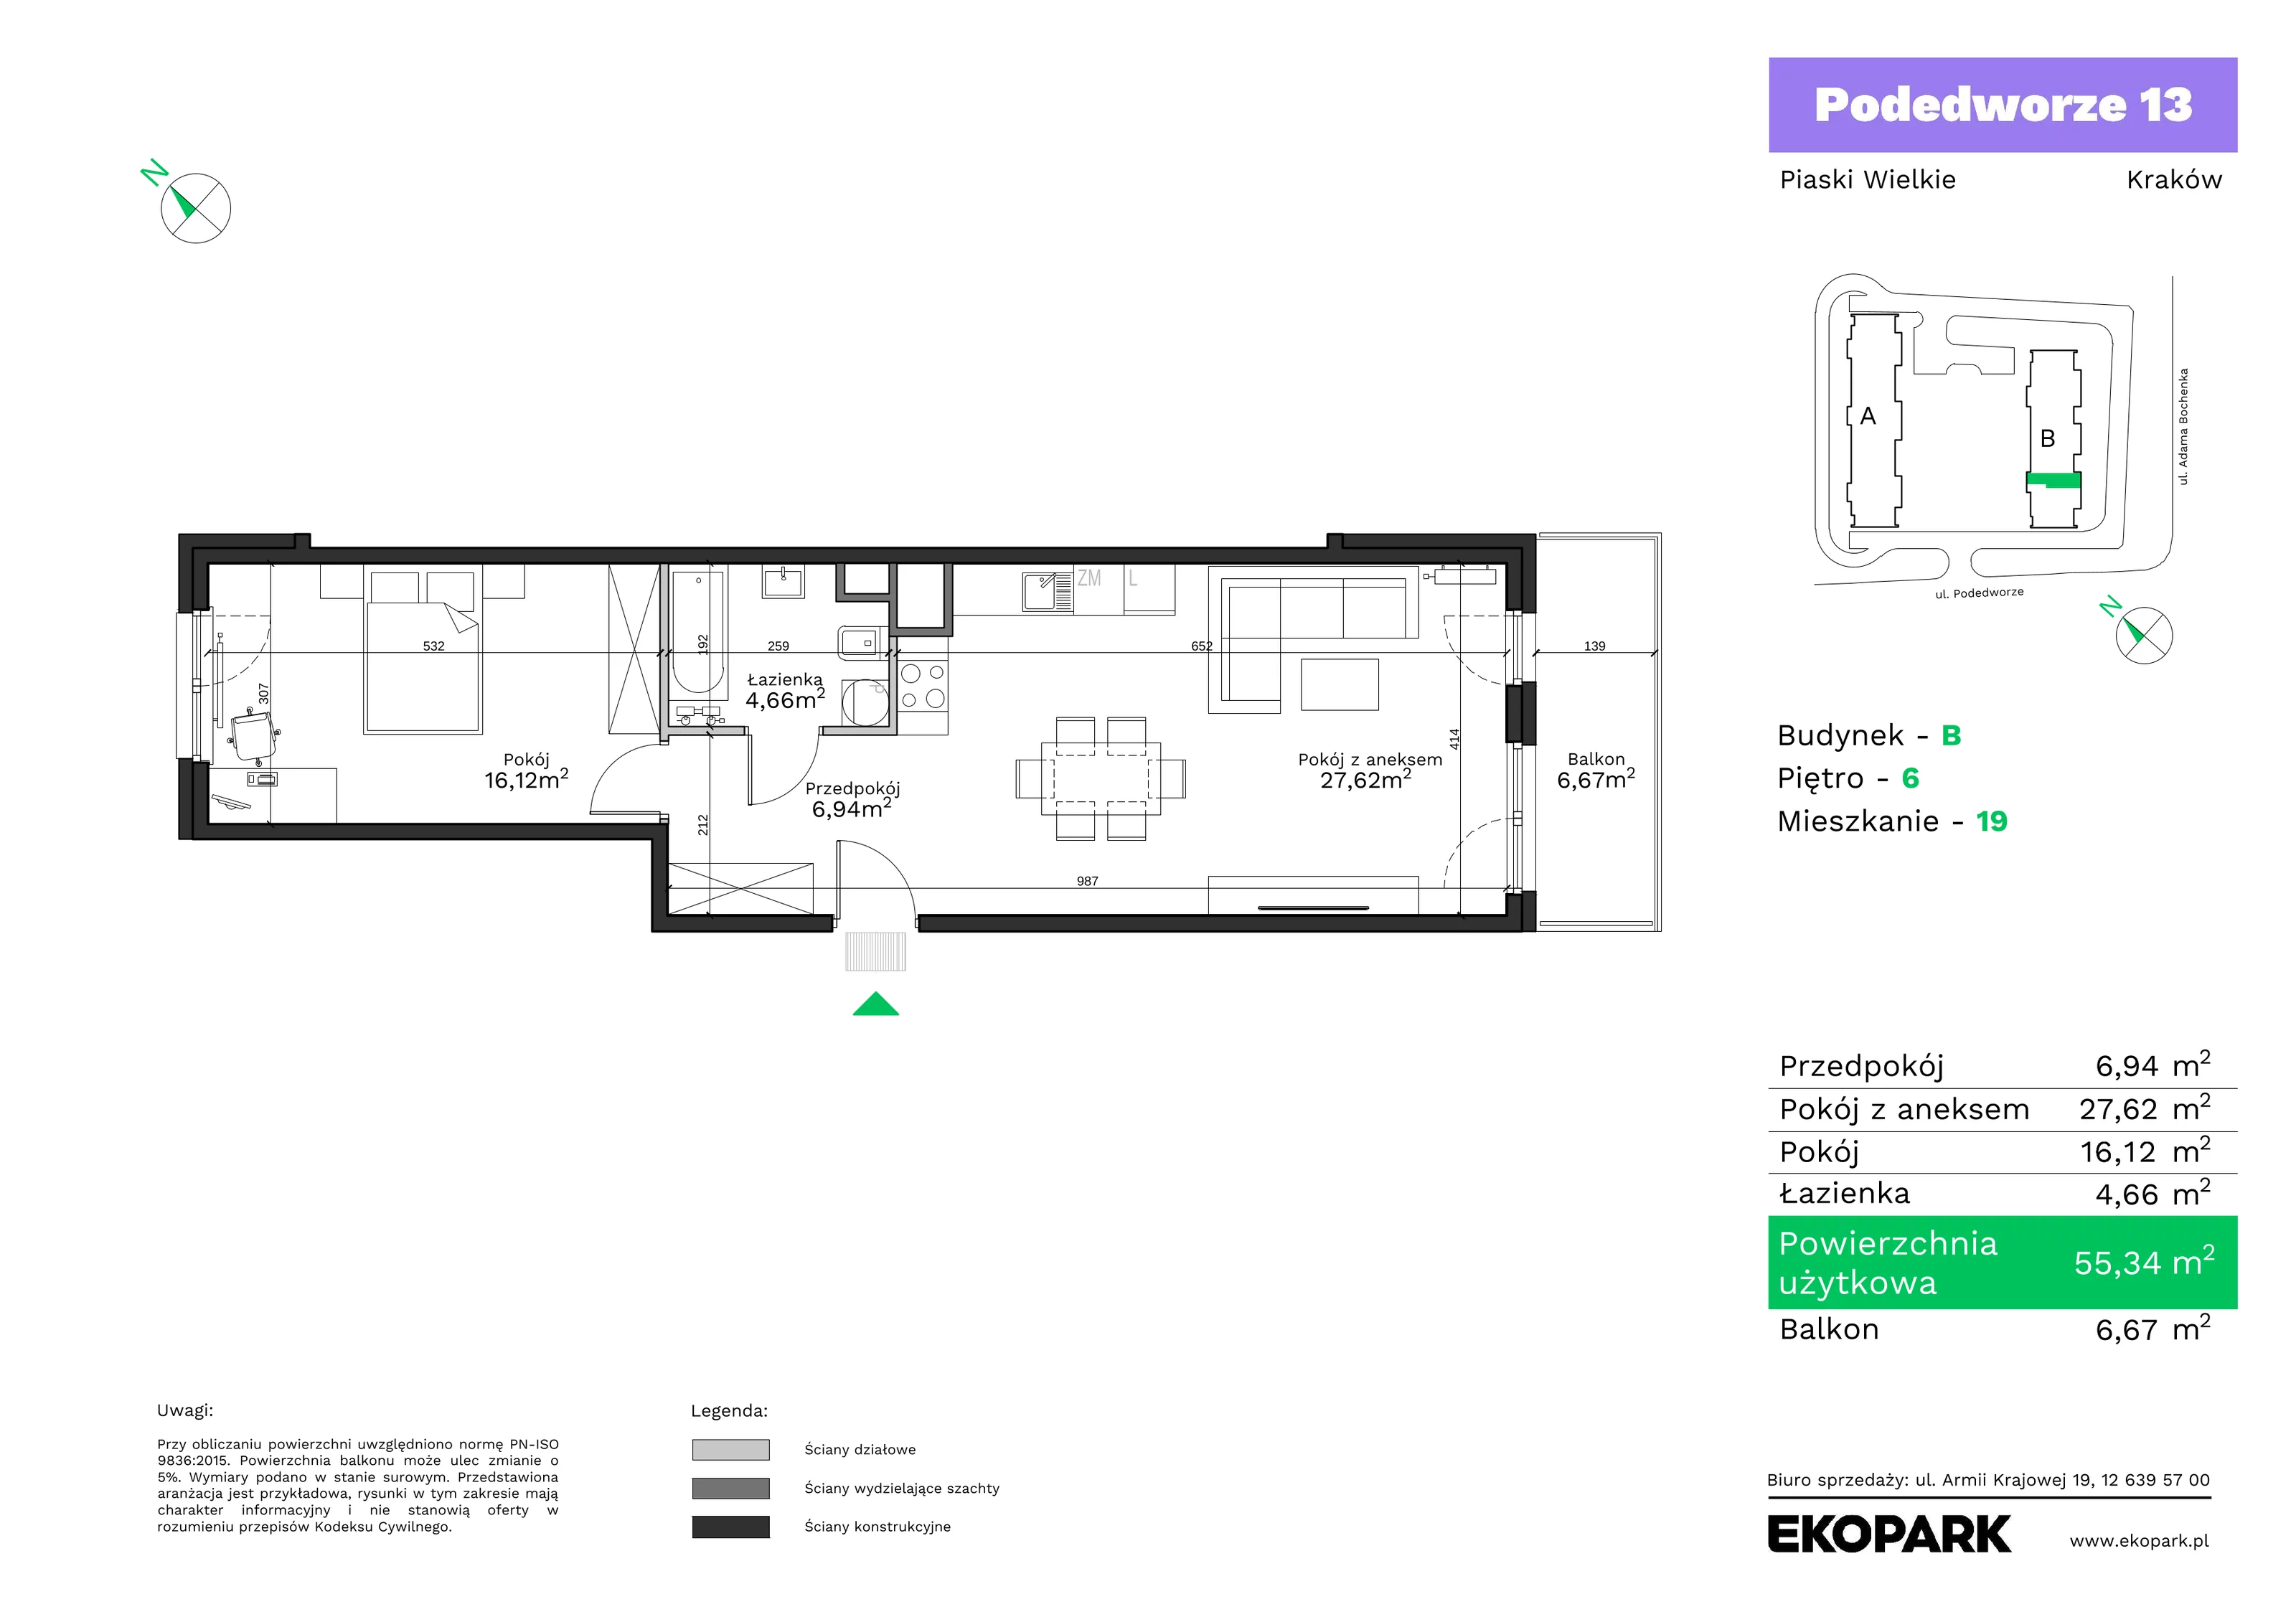 Mieszkanie 55,34 m², piętro 6, oferta nr B19, Podedworze 13, Kraków, Podgórze Duchackie, Piaski Wielkie, ul. Podedworze 13